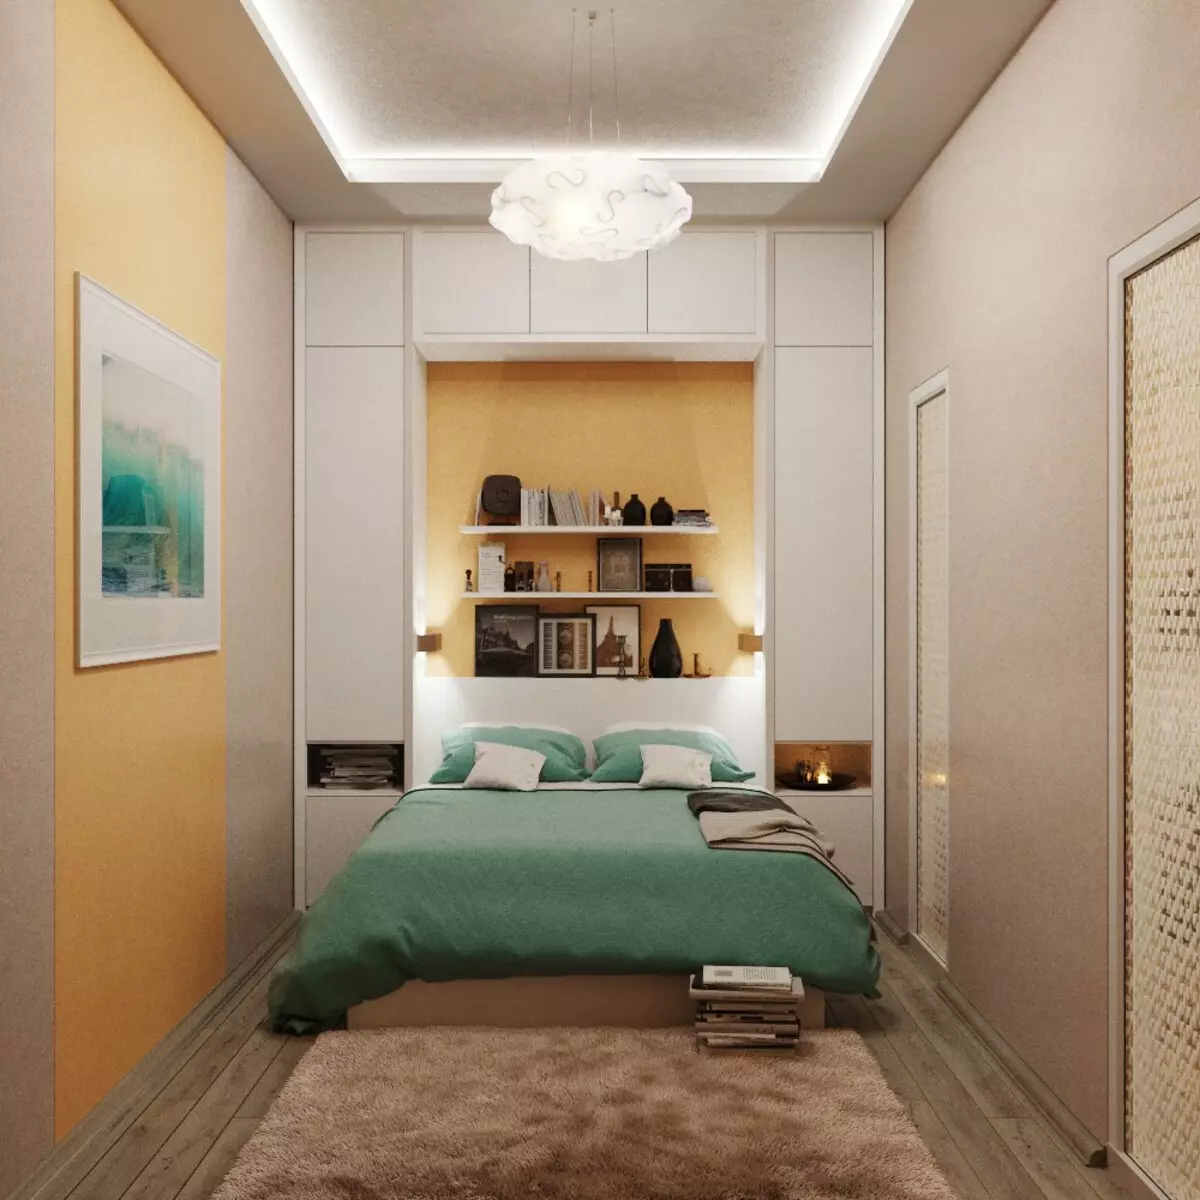 Дизайн комнаты 2.5 на 2.5. Планировка спальни 11м2. Спальня 9м2 интерьер. Маленькая спальня интерьер 9 м2. Интерьер маленькой спальни 11м2.